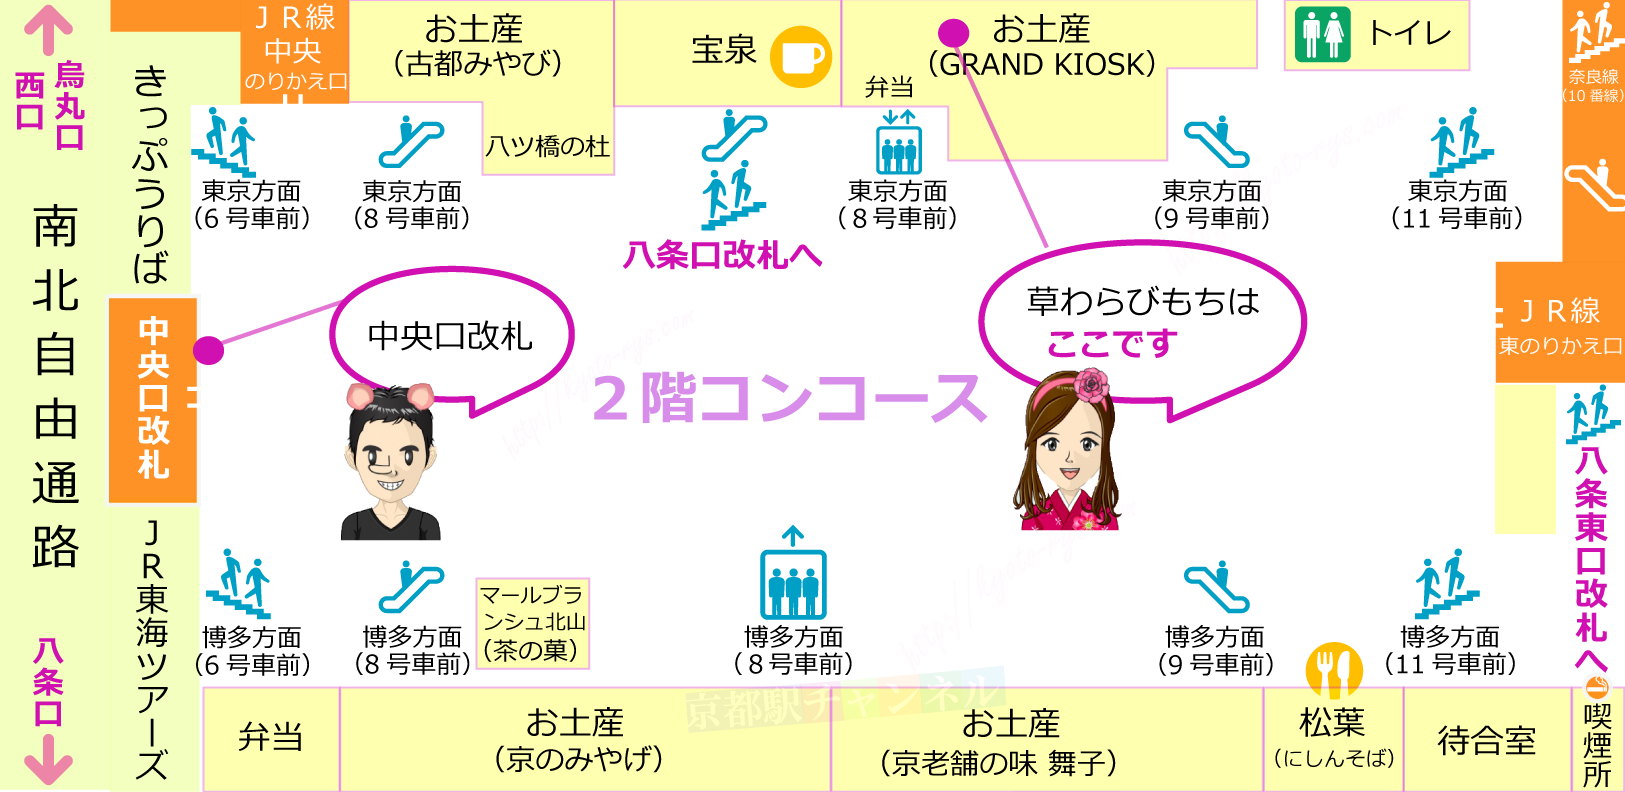 京都駅の新幹線改札内の草わらびもち販売マップ